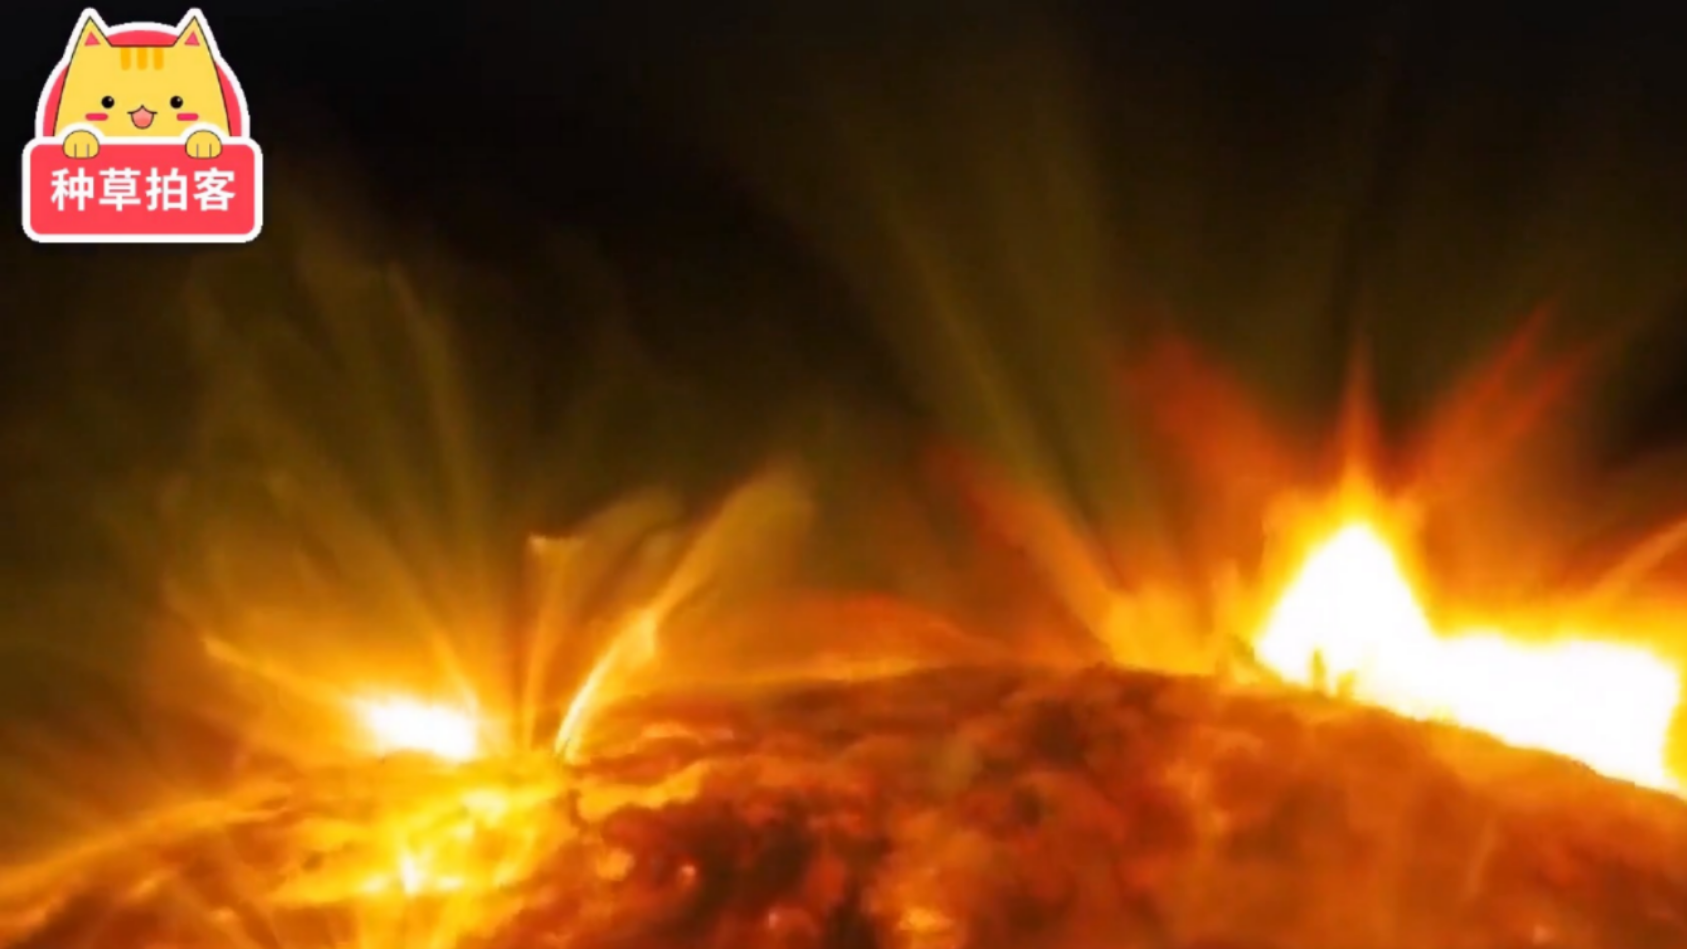 宇宙无氧真空，那么太阳是怎么燃烧的呢？